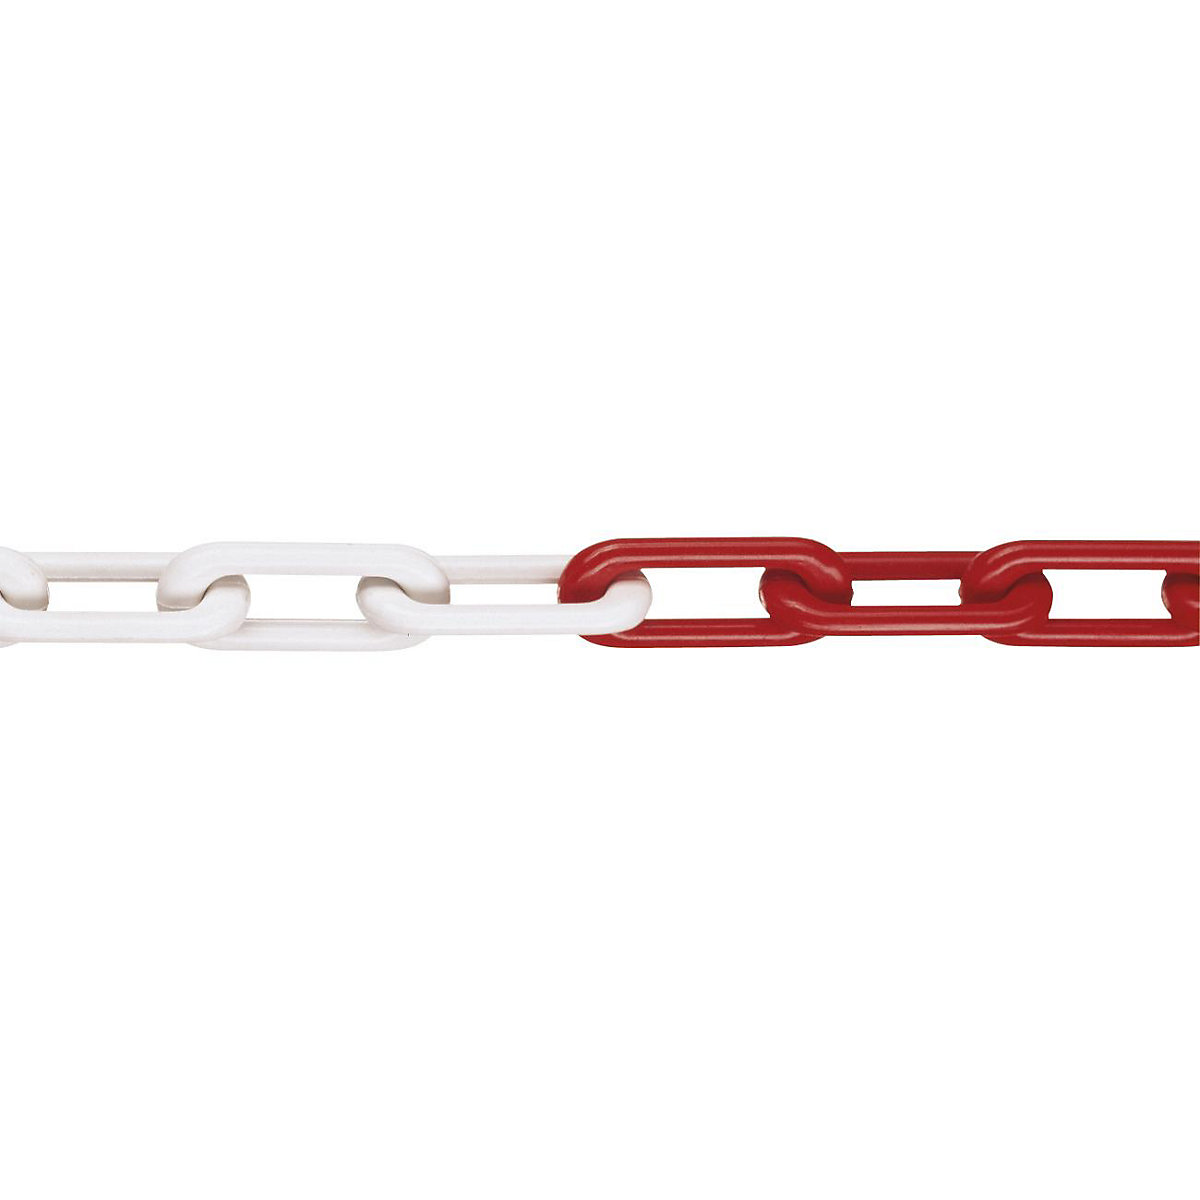 Kvalitetni najlonski lanac, kvaliteta MNK 8, dužina sklopa 25 m, u crvenobijeloj boji, od 4 komada-7